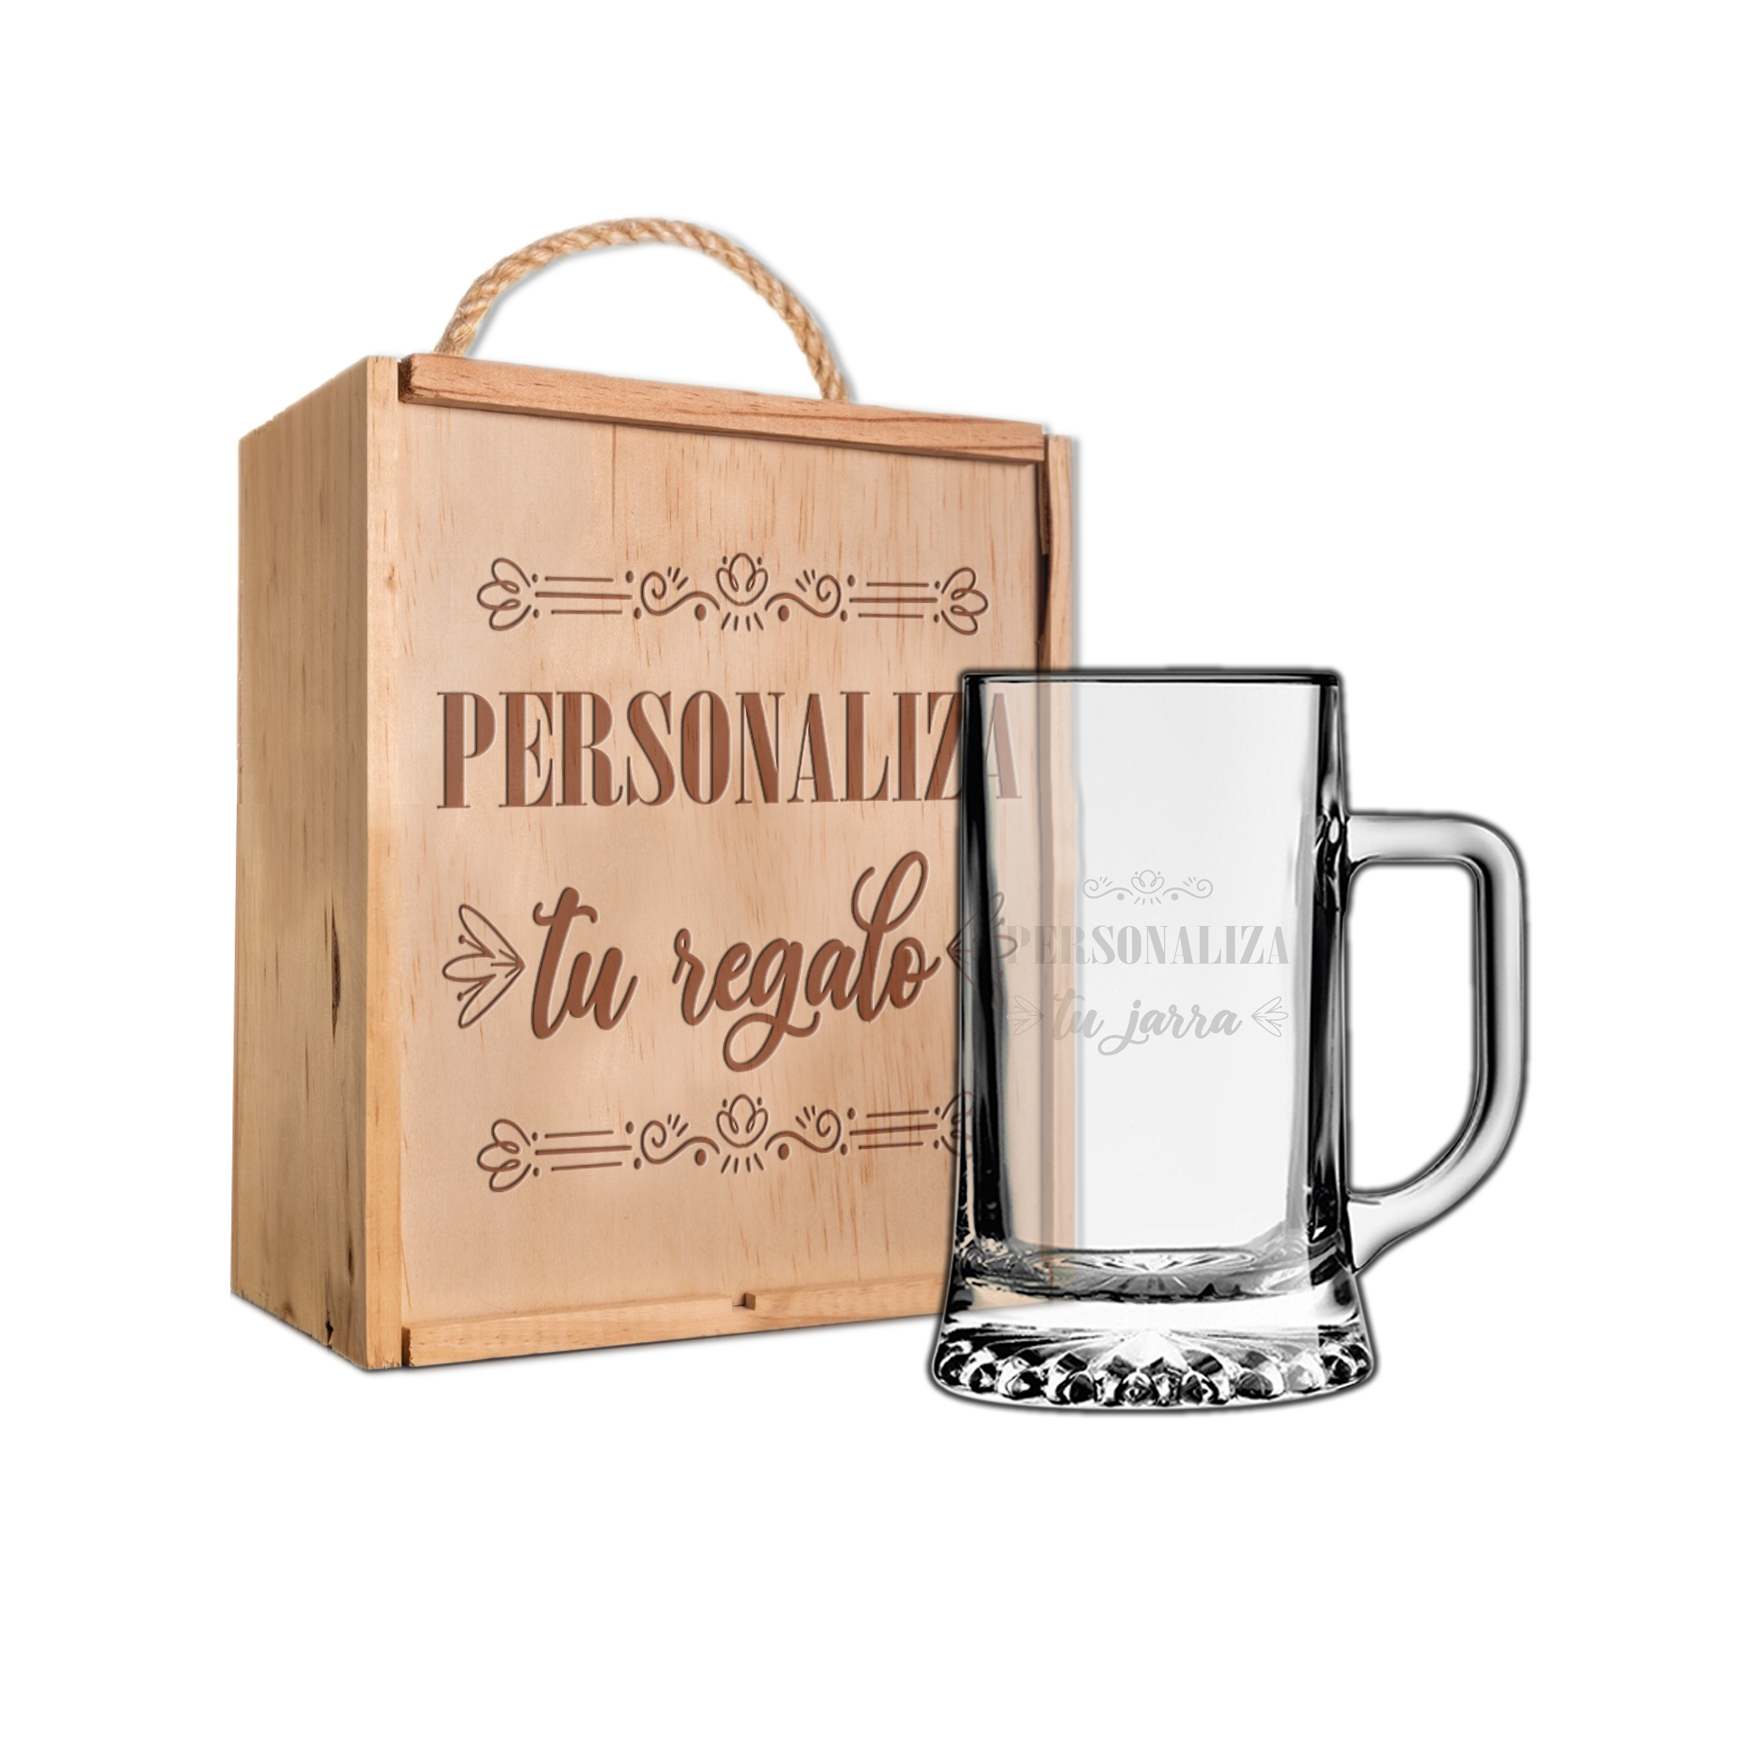 Kit jarra cerveza + caja personalizada regalos personalizados